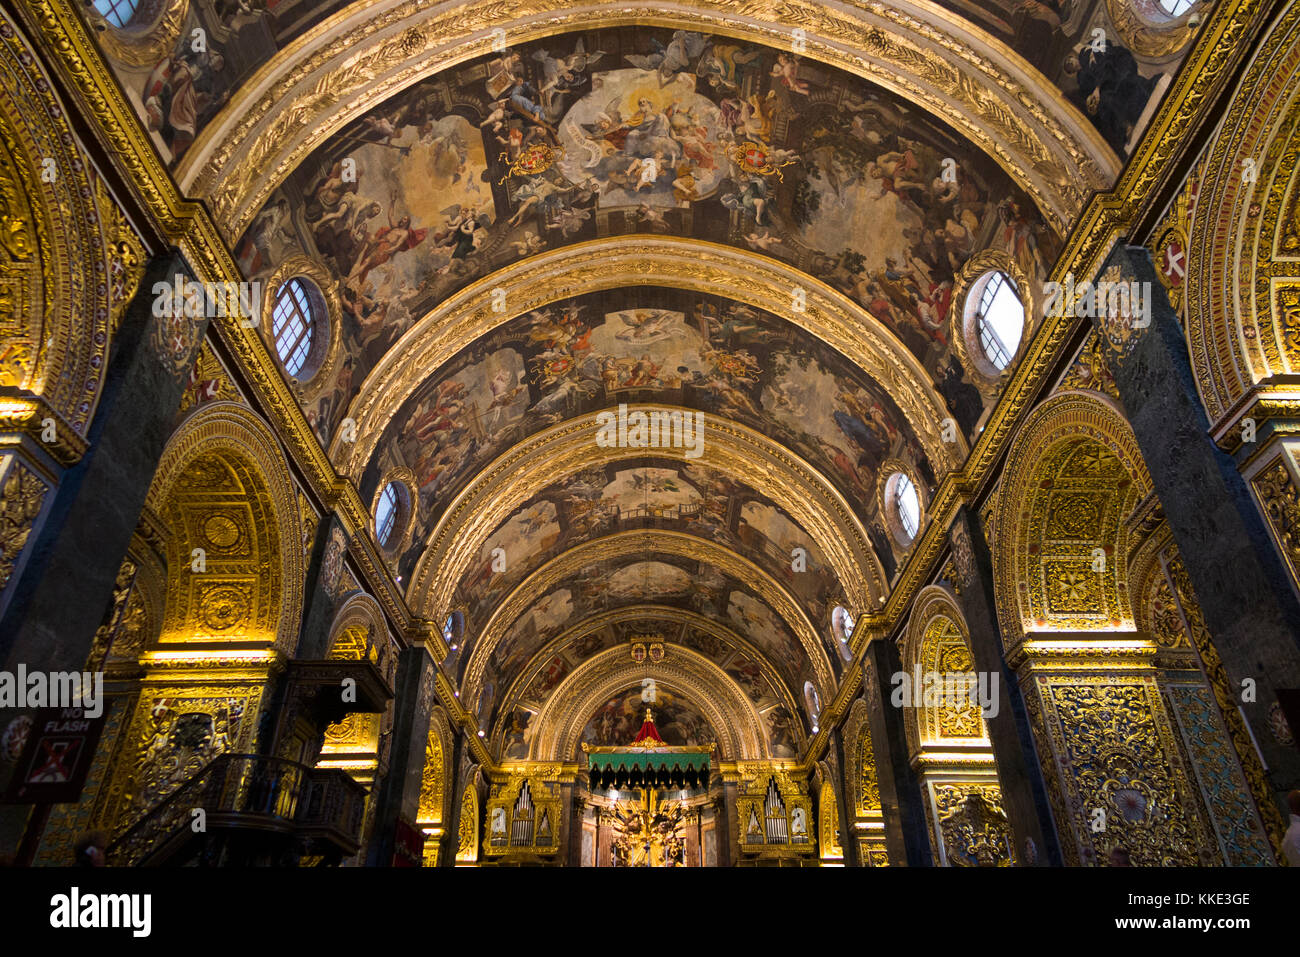 & Baroque décoré plafond (autel & autel dais de distance) au sein de la Nef /'intérieur à l'intérieur de St John's Co-cathédrale. La Valette, Malte Banque D'Images